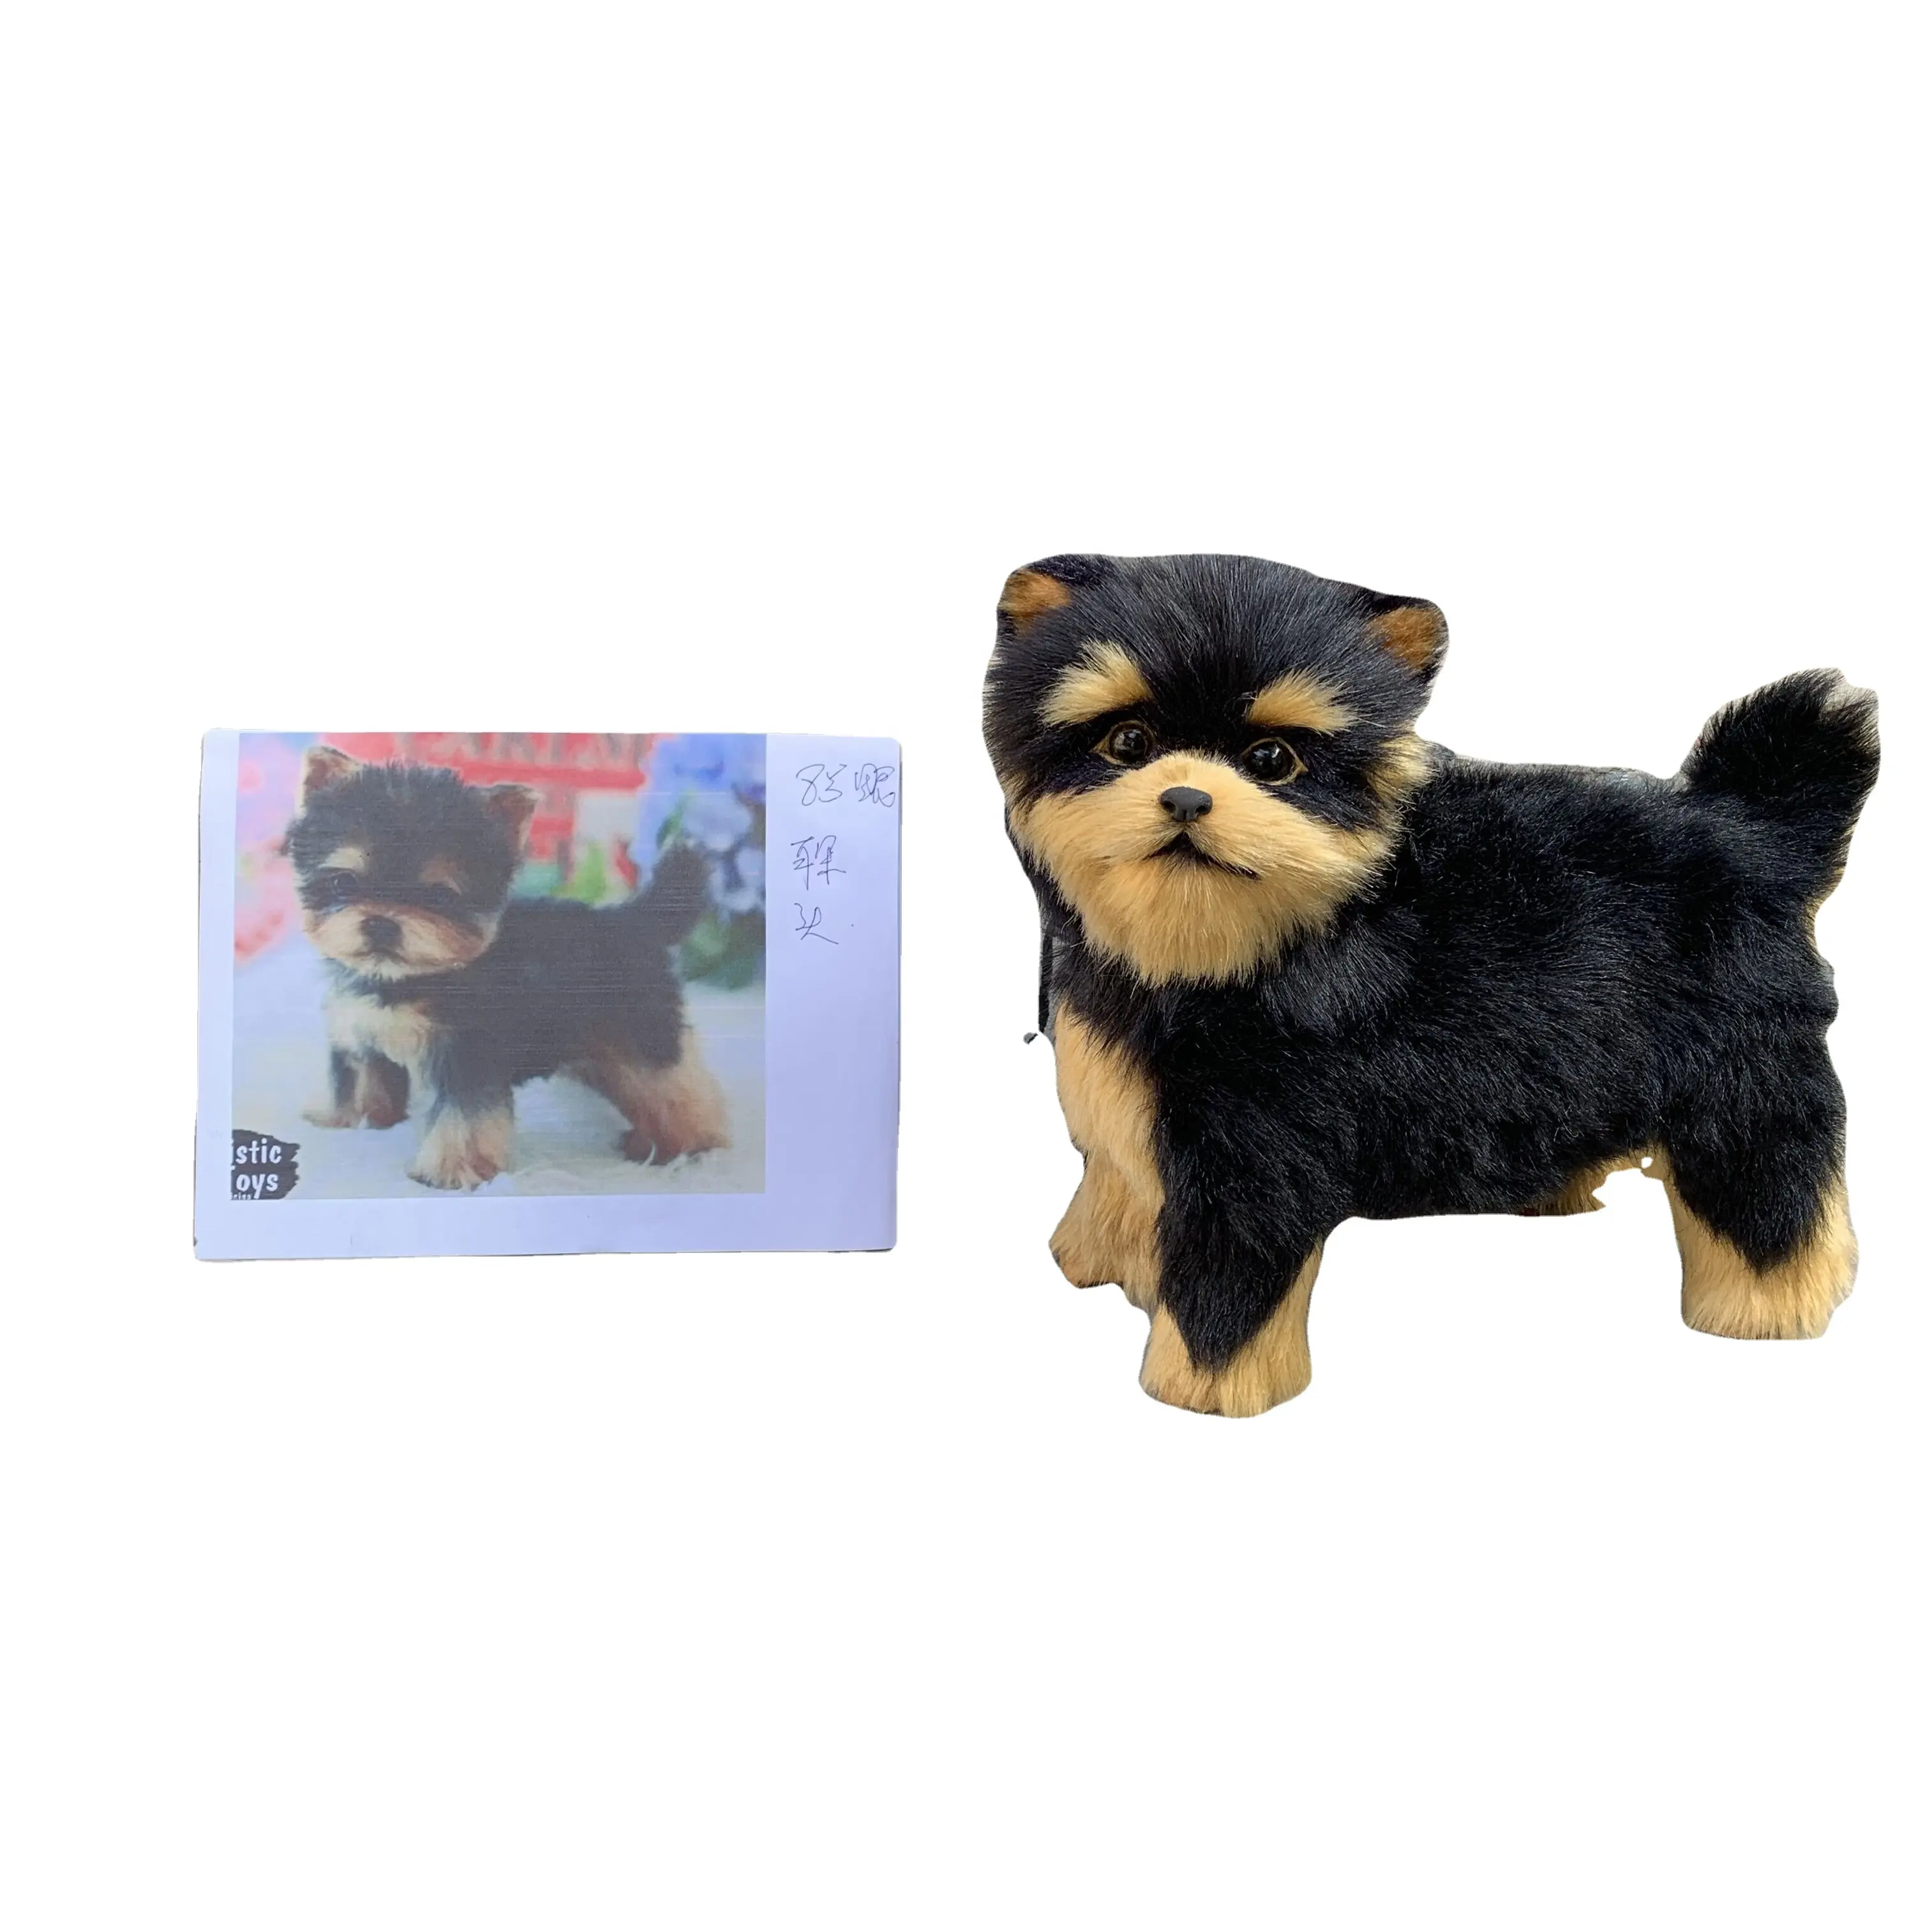 Brinquedo de pelúcia para cachorros, brinquedo de pelúcia realista de natal, diy, feito à mão, modelo de animal, artesanato, produtos para crianças